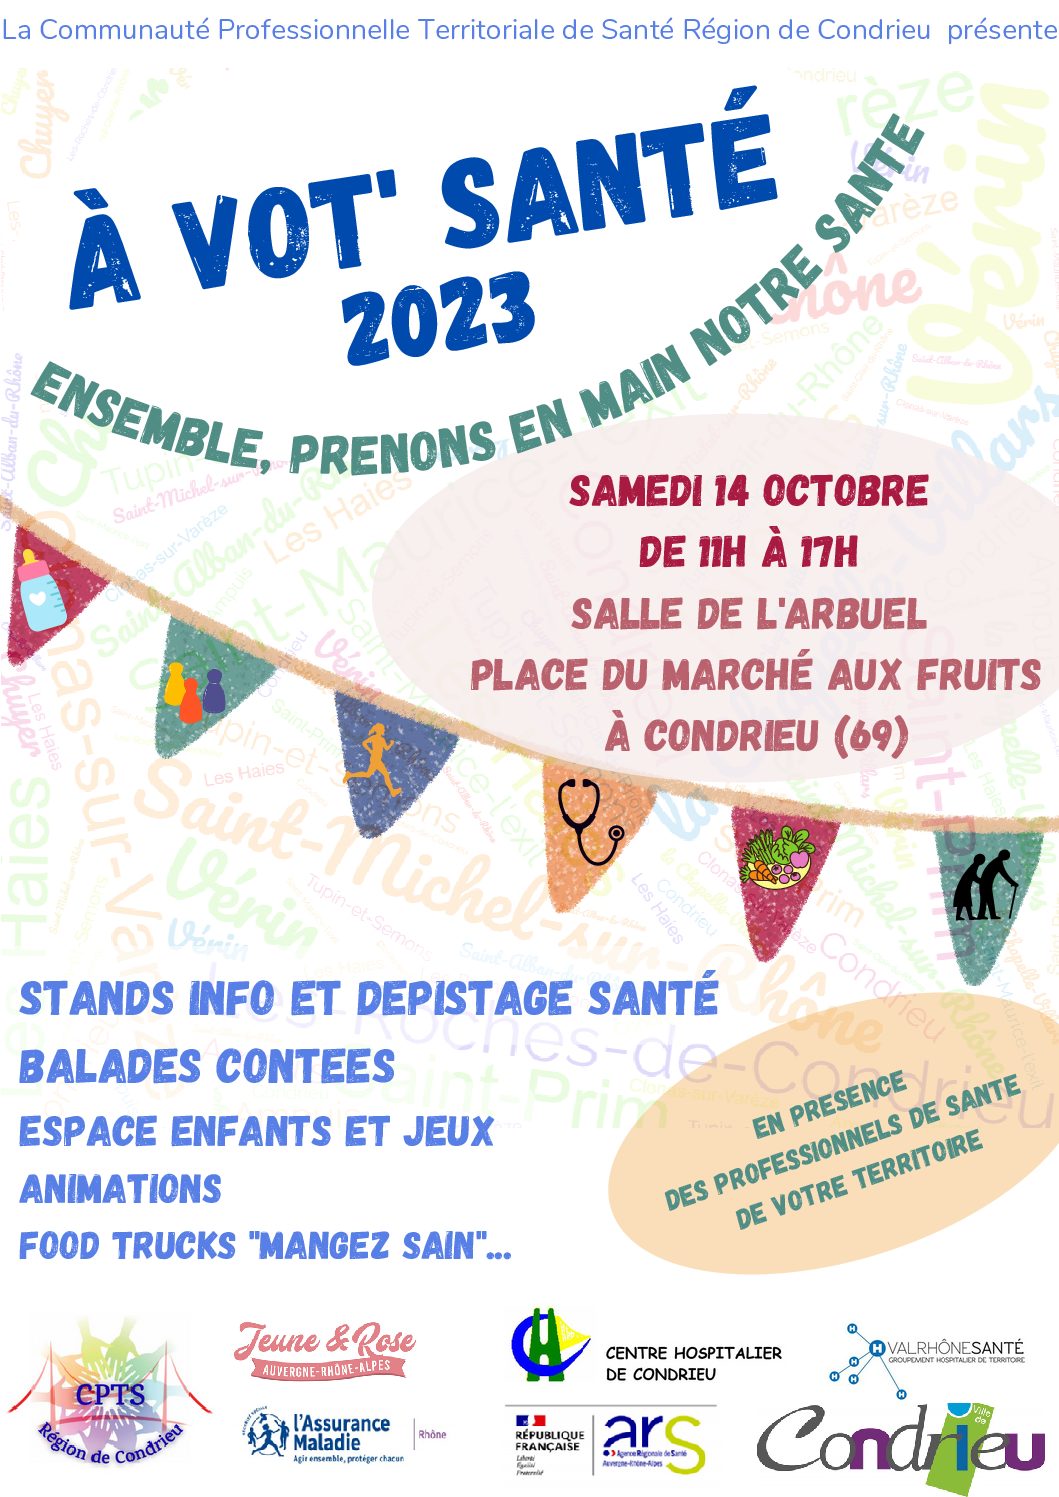 Festival « A vot’ santé 2023 » – 14 octobre 2023